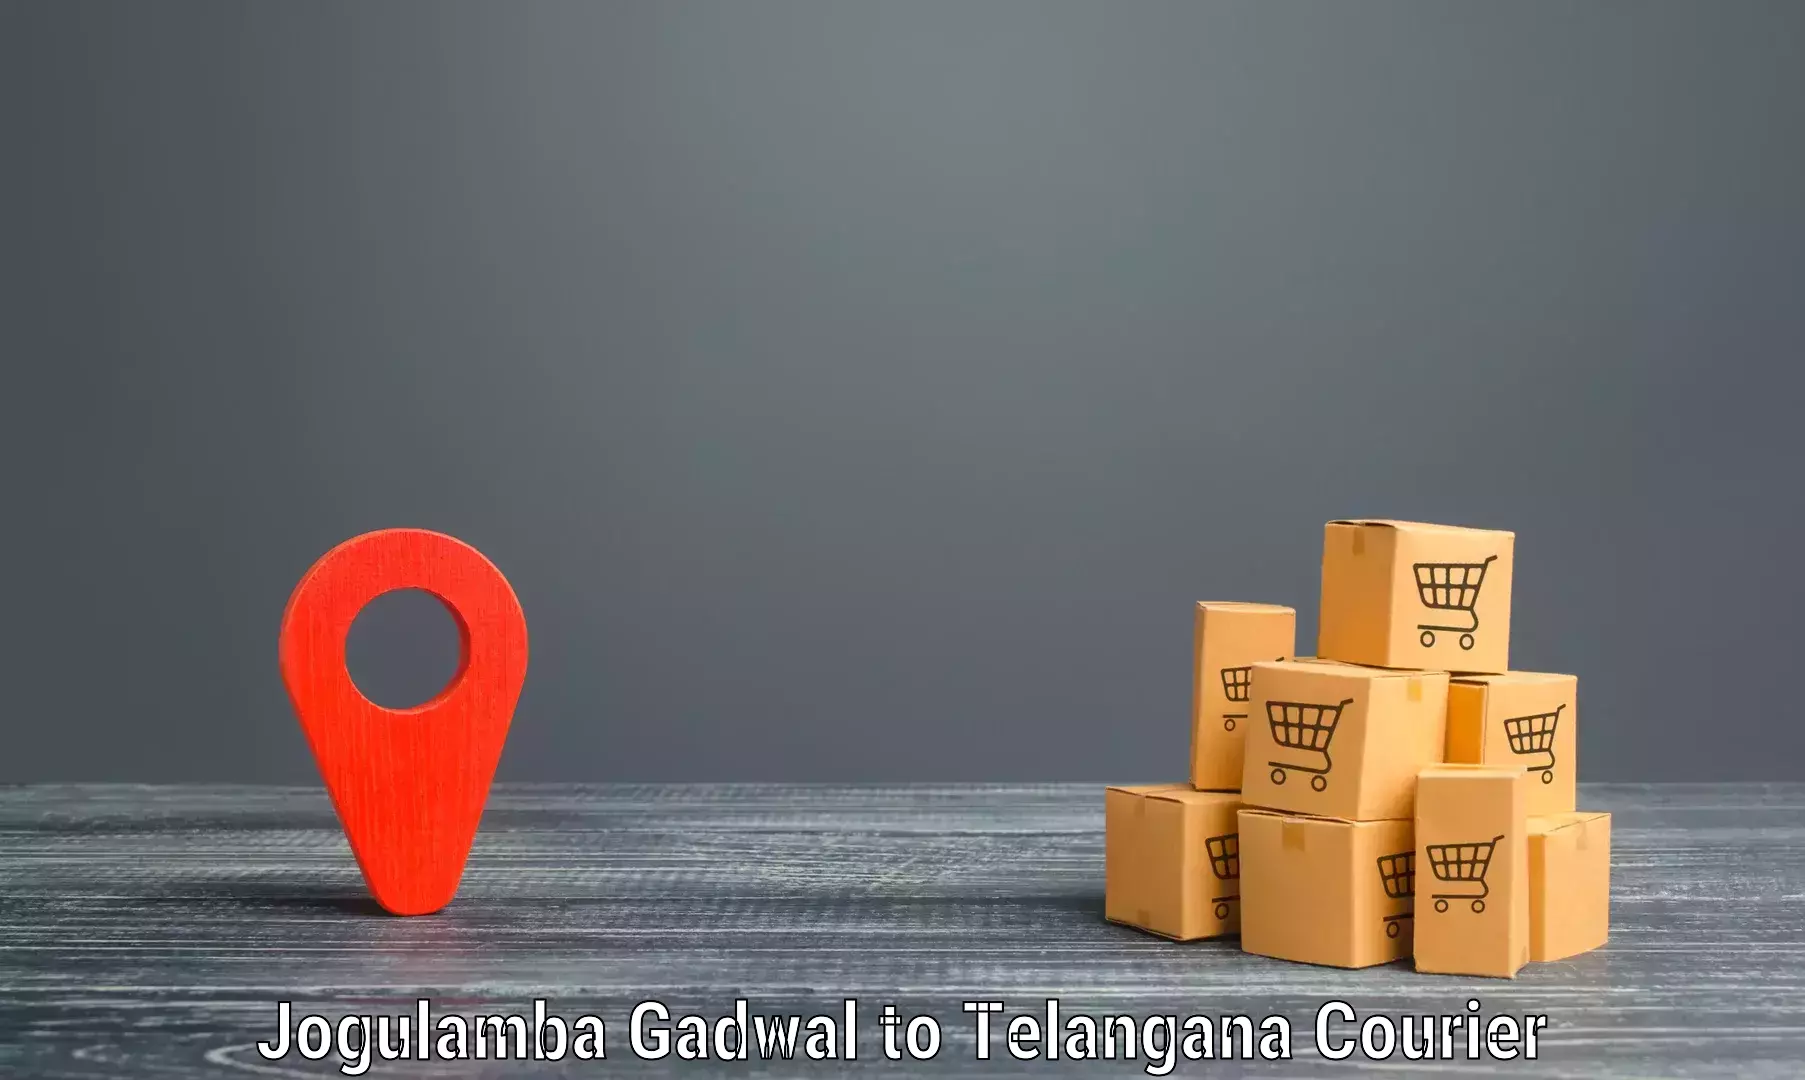 Express delivery network Jogulamba Gadwal to Zaheerabad